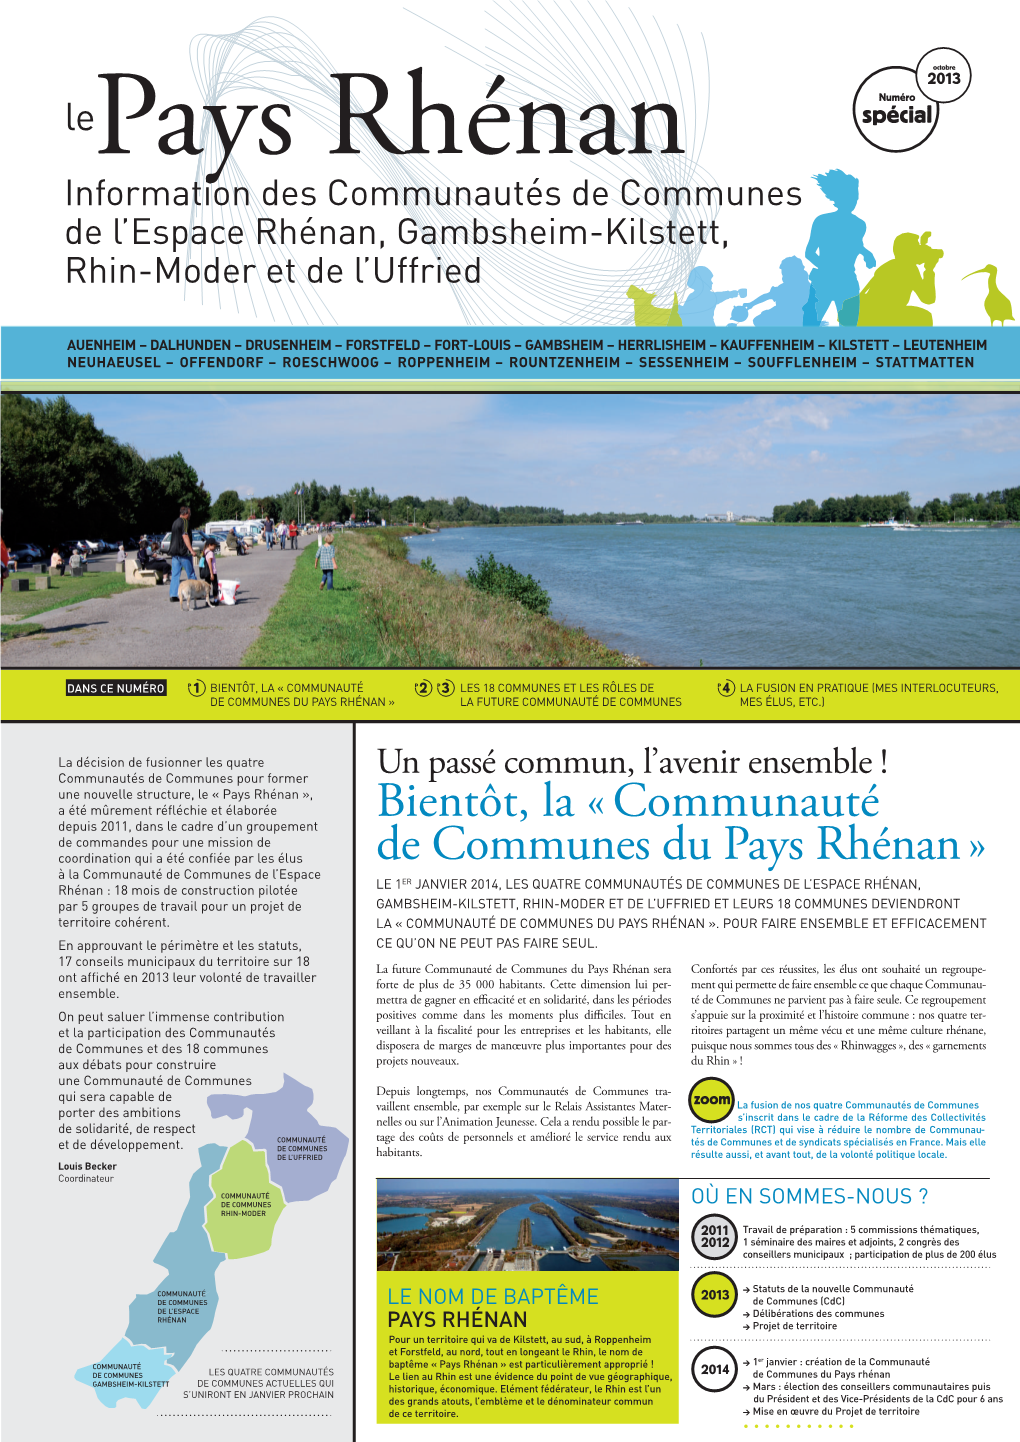 Bientôt, La « Communauté De Communes Du Pays Rhénan »